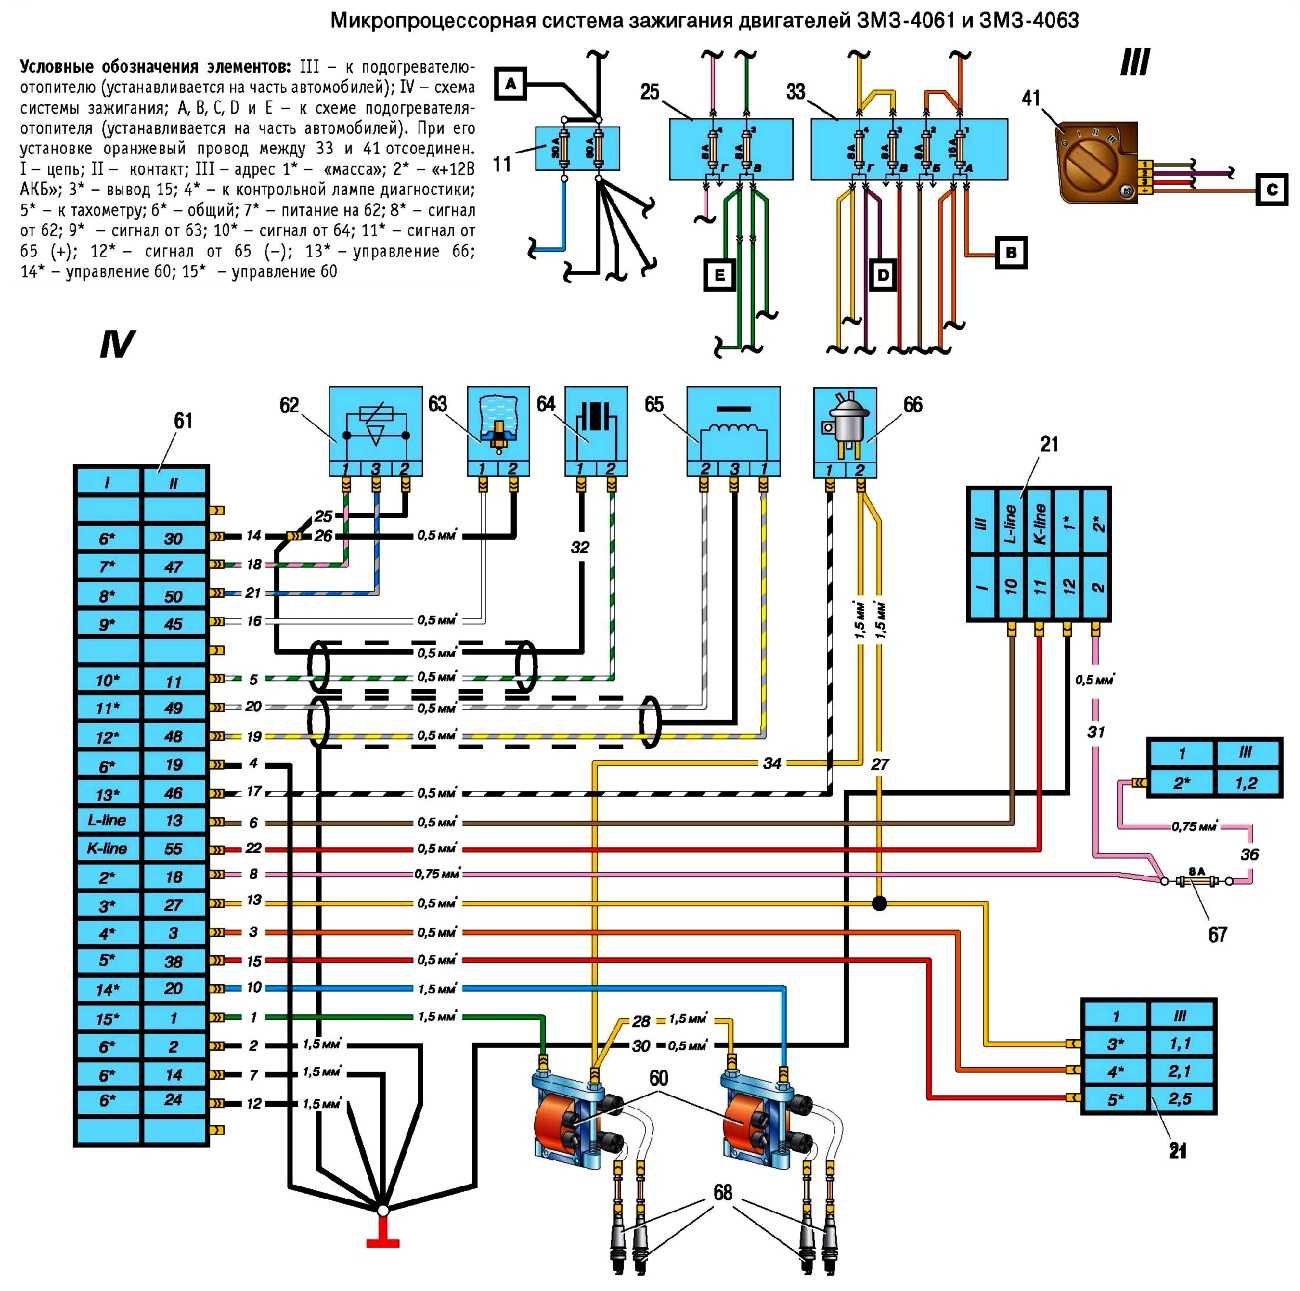 Микропроцессорная система зажигания змз-406